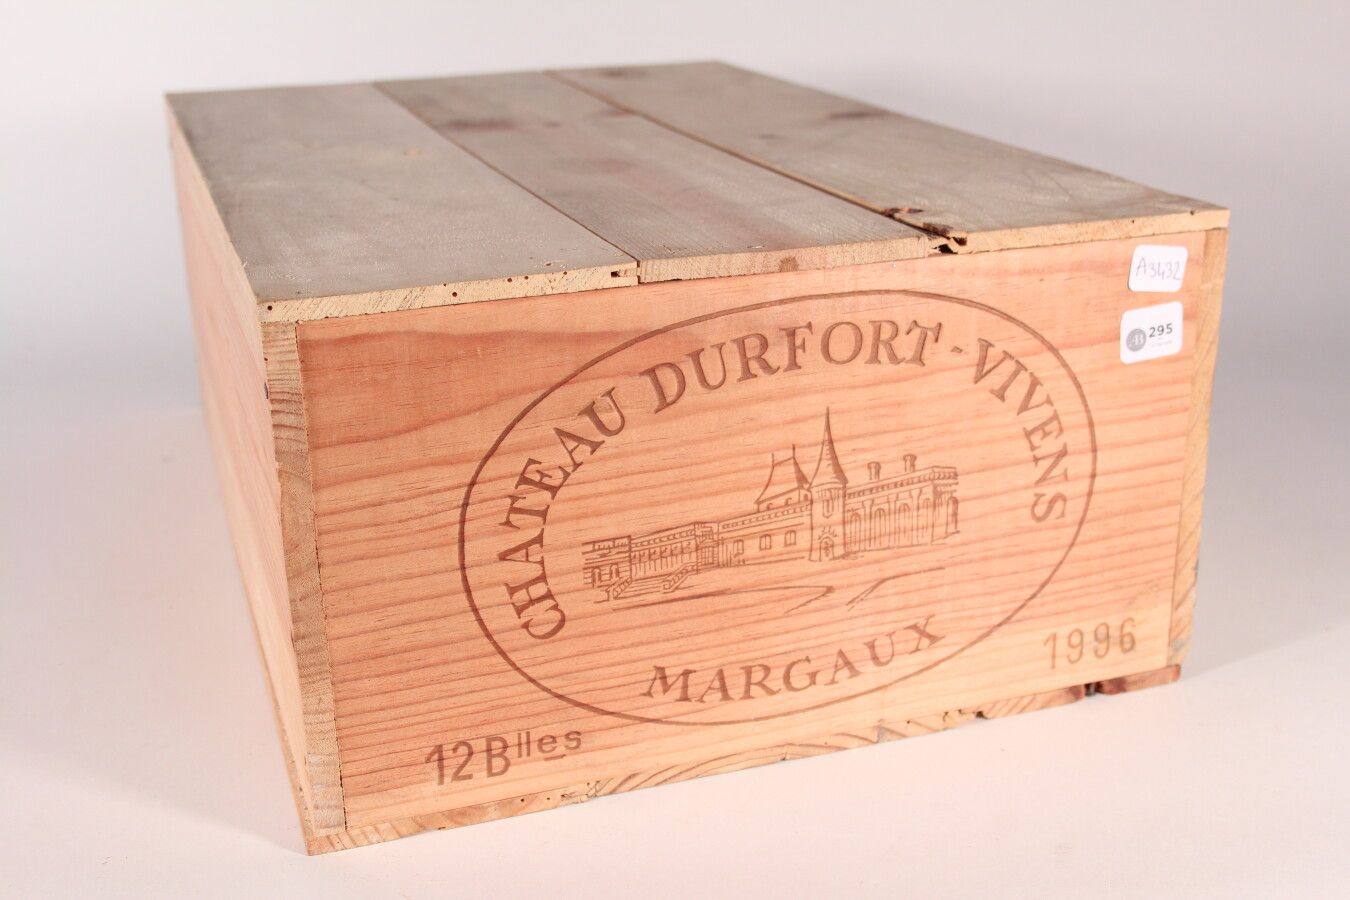 Null 1996 - Château Durfort-Vivens

Margaux - 12 Flaschen